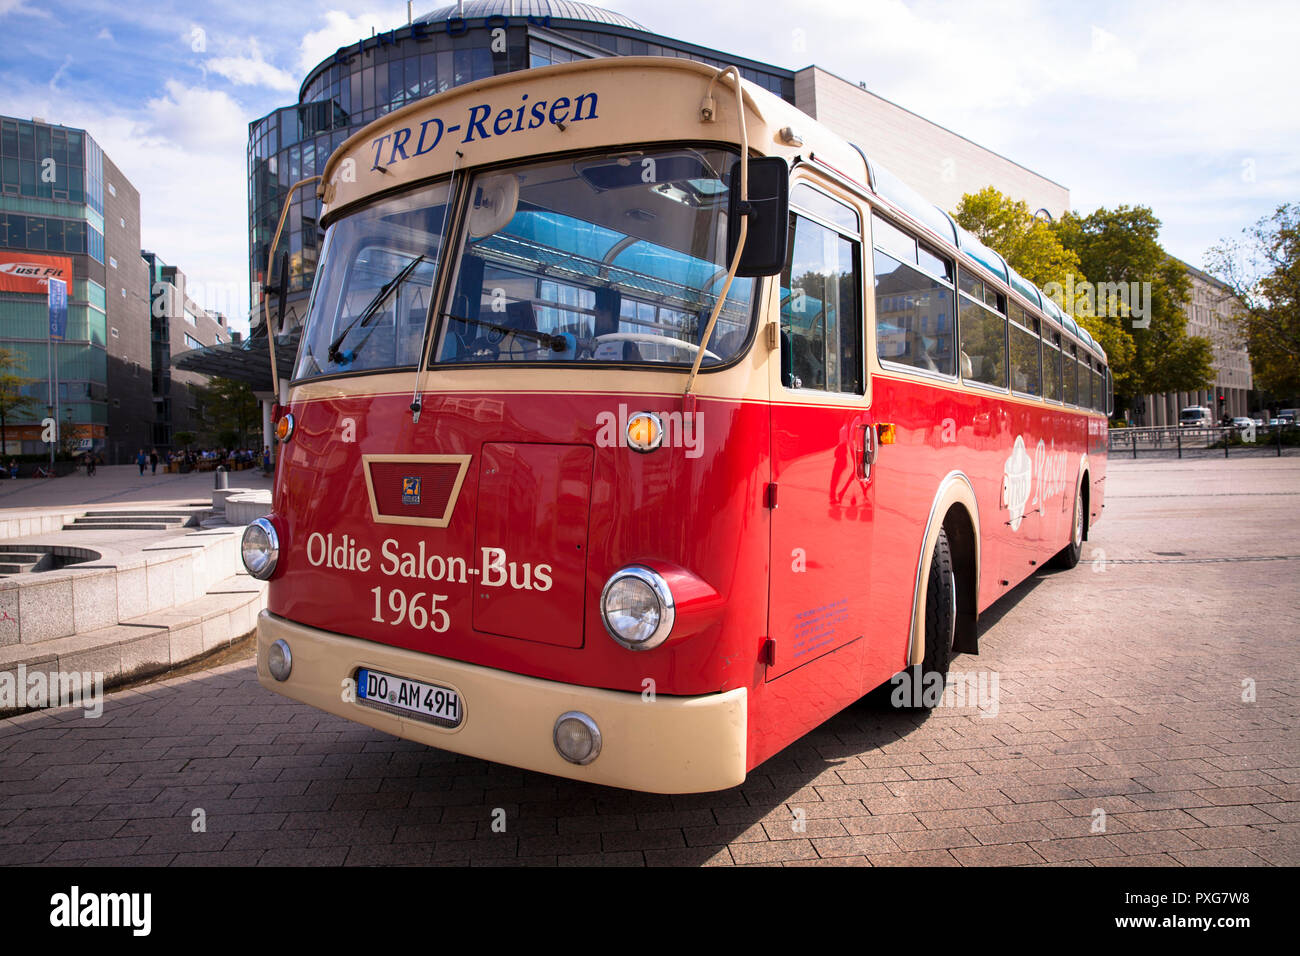 Buessing bus oldtimer de 1965 au SLS Hotel, Cologne, Allemagne. Buessing Oldtimer Reisebus von 1965 Im Mediapark, Koeln, Deutschland. Banque D'Images